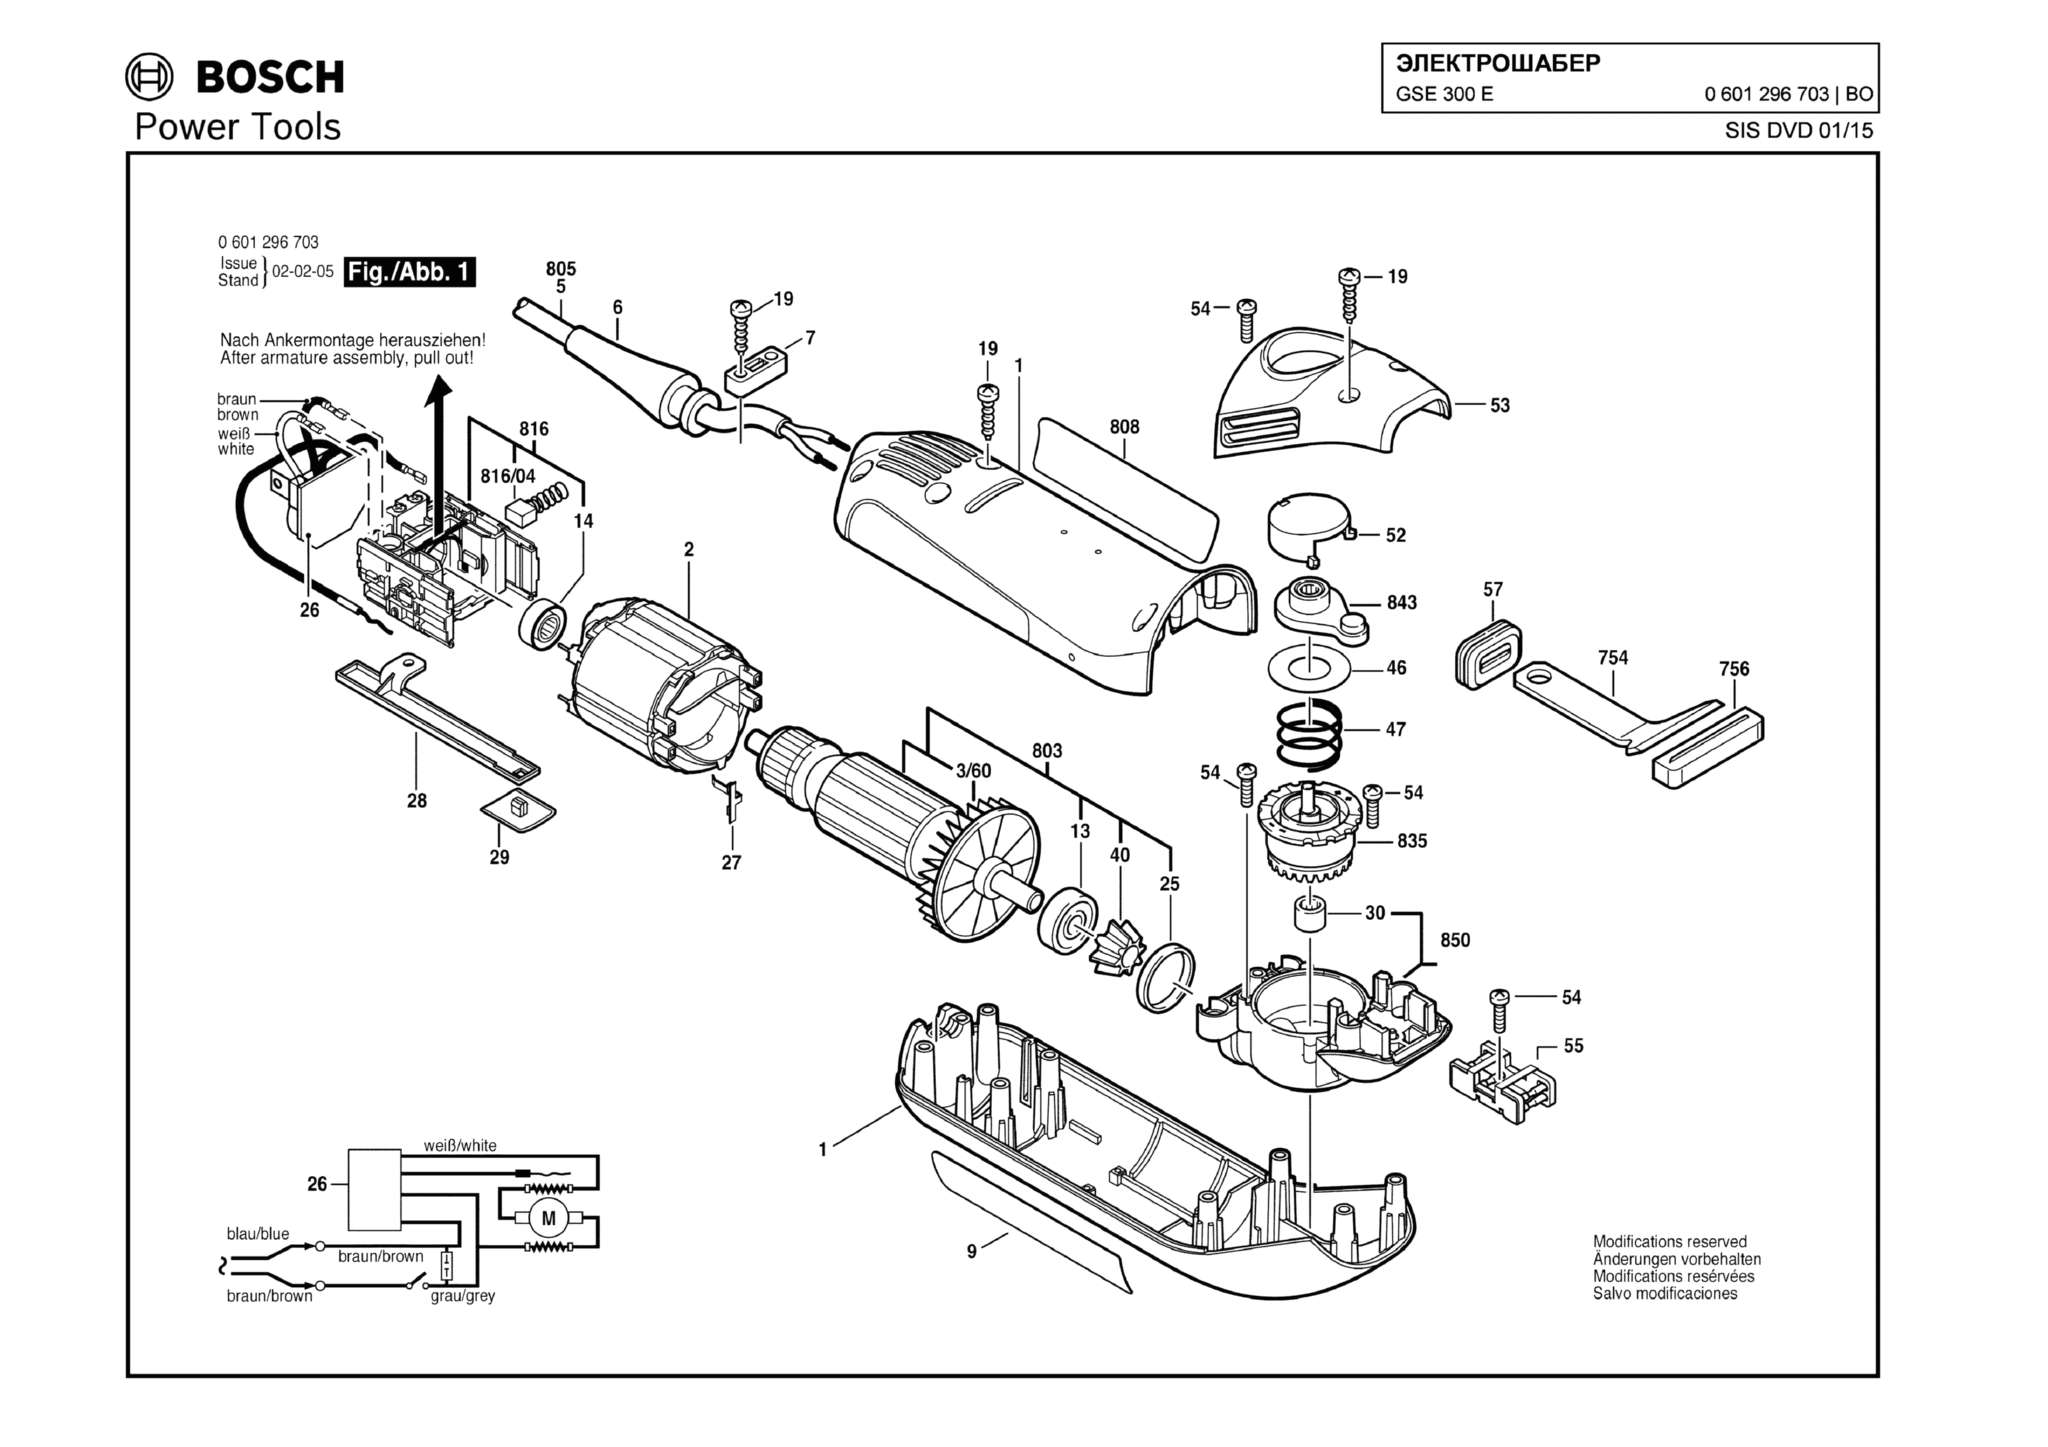 Запчасти, схема и деталировка Bosch GSE 300 E (ТИП 0601296703)